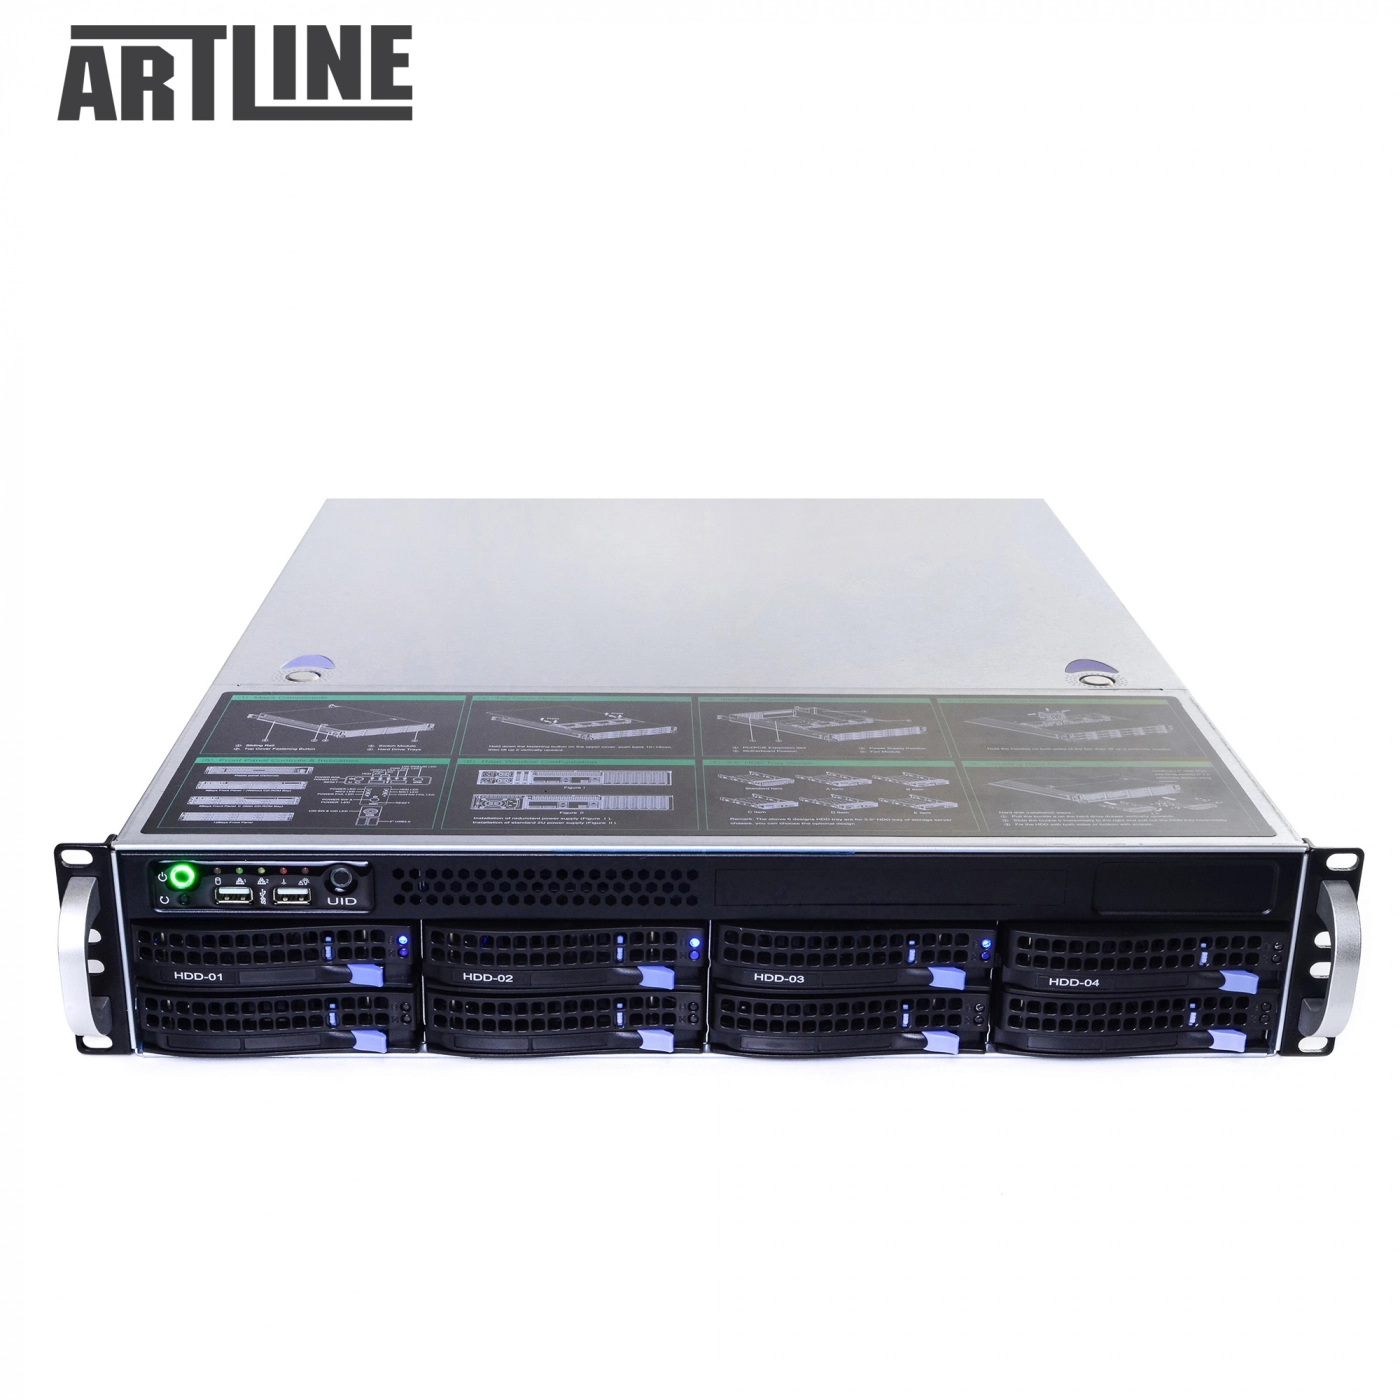 Купить Сервер ARTLINE Business R33v01 - фото 10